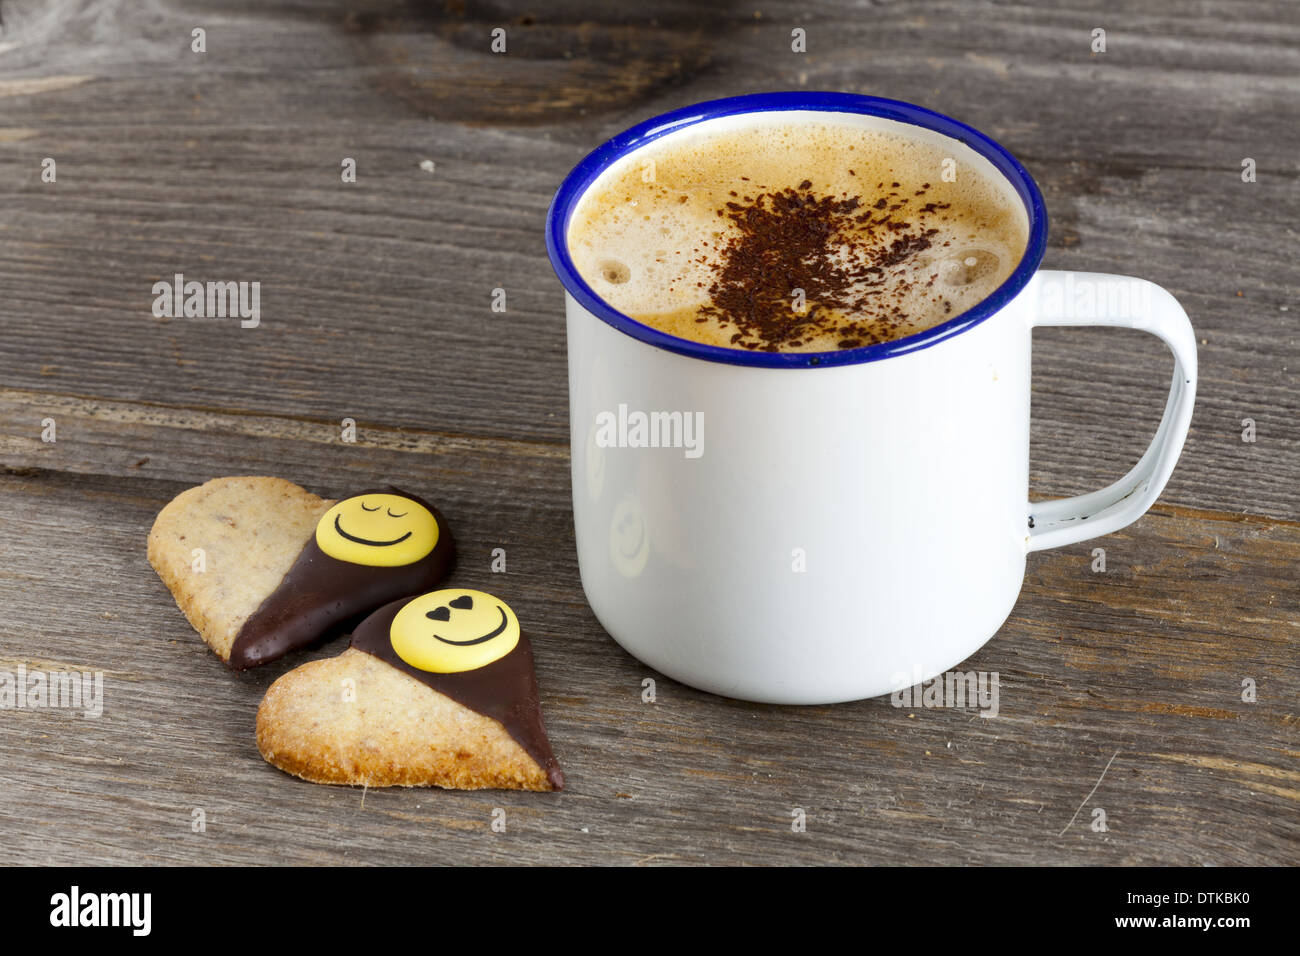 Emaille Becher mit heißem Kaffee und zwei Kekse mit Herzform auf alten rustikalen Holzbrett mit und textfreiraum linken Bildbereich Stockfoto